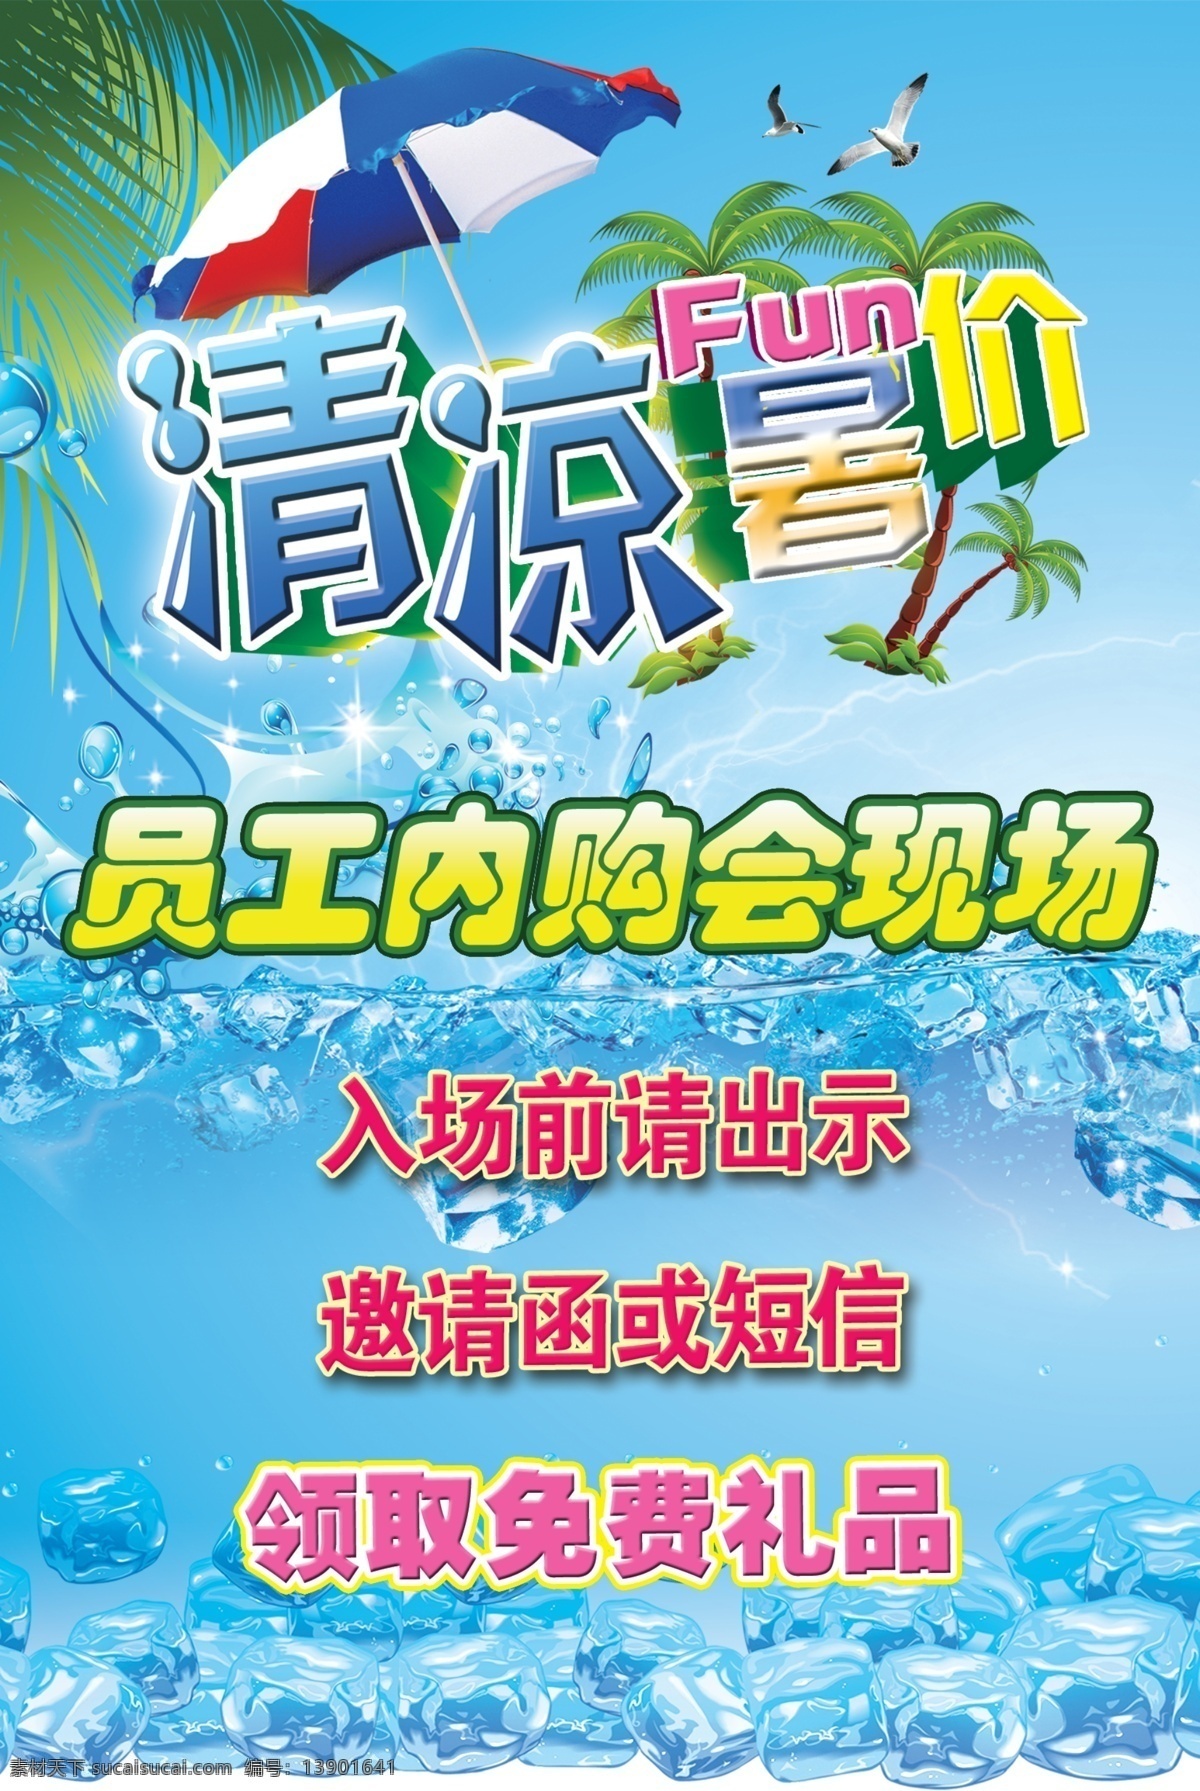 清凉 暑假 海报 太阳伞 清凉暑假海报 远东内购会 psd源文件